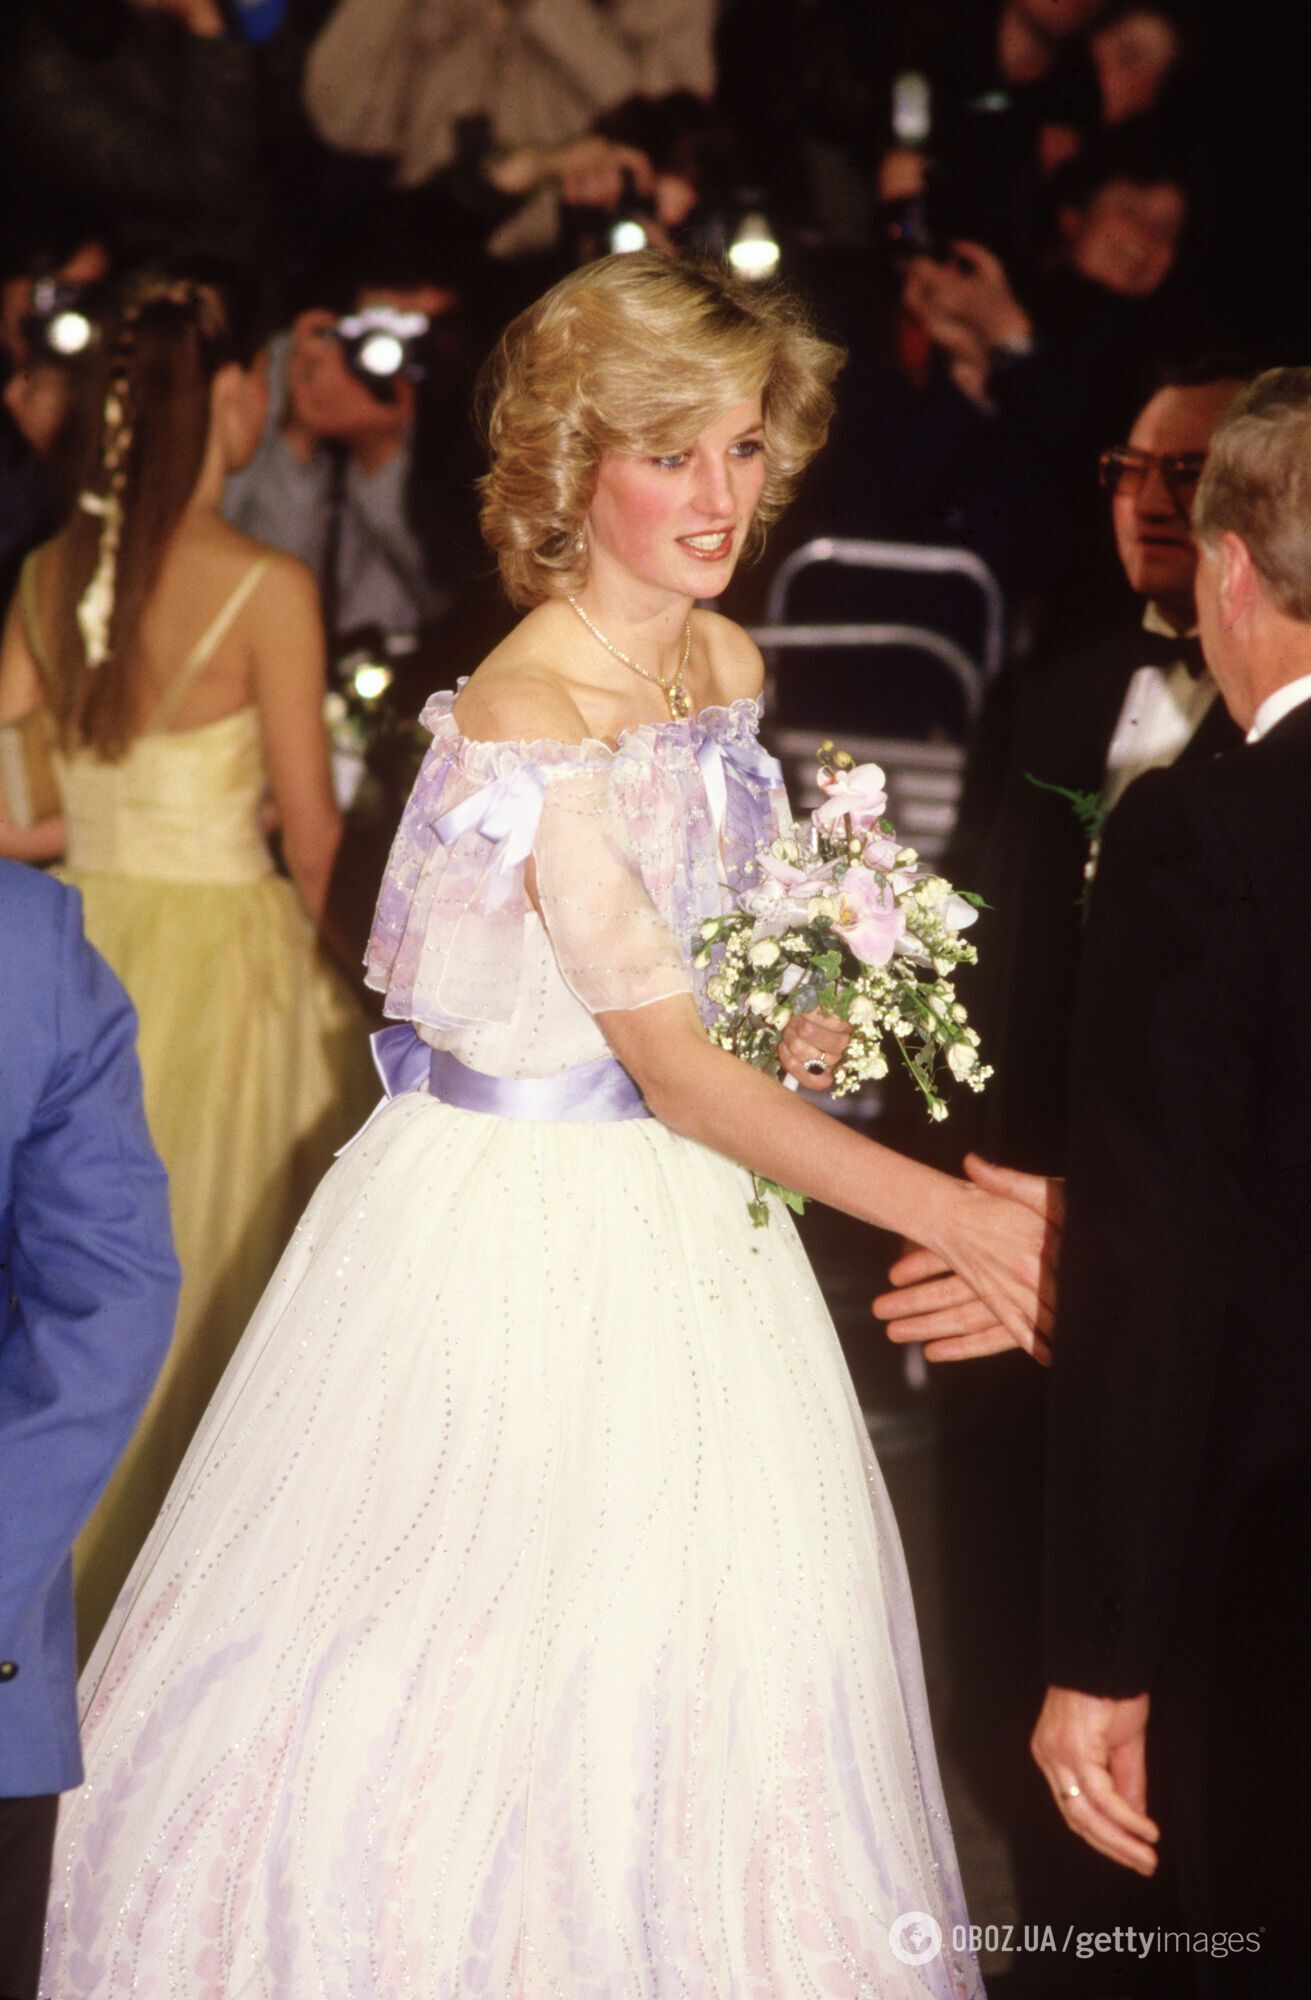 Відео зустрічі принцеси Діани з "містером Біном" у 1984 році розчулило мережу
